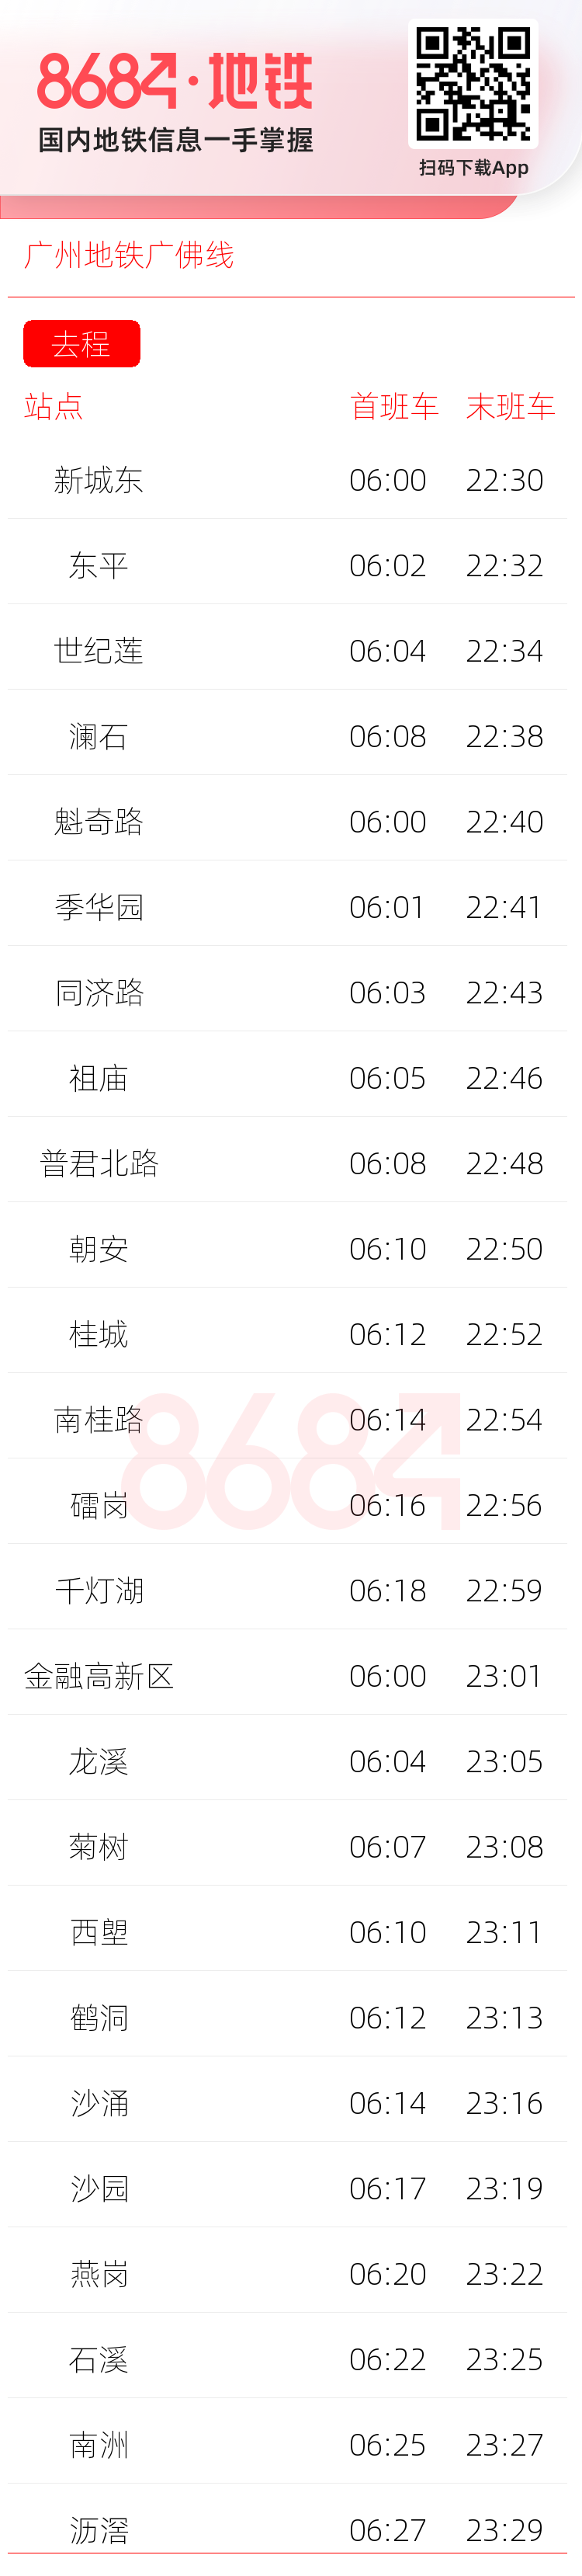 广州地铁广佛线运营时间表